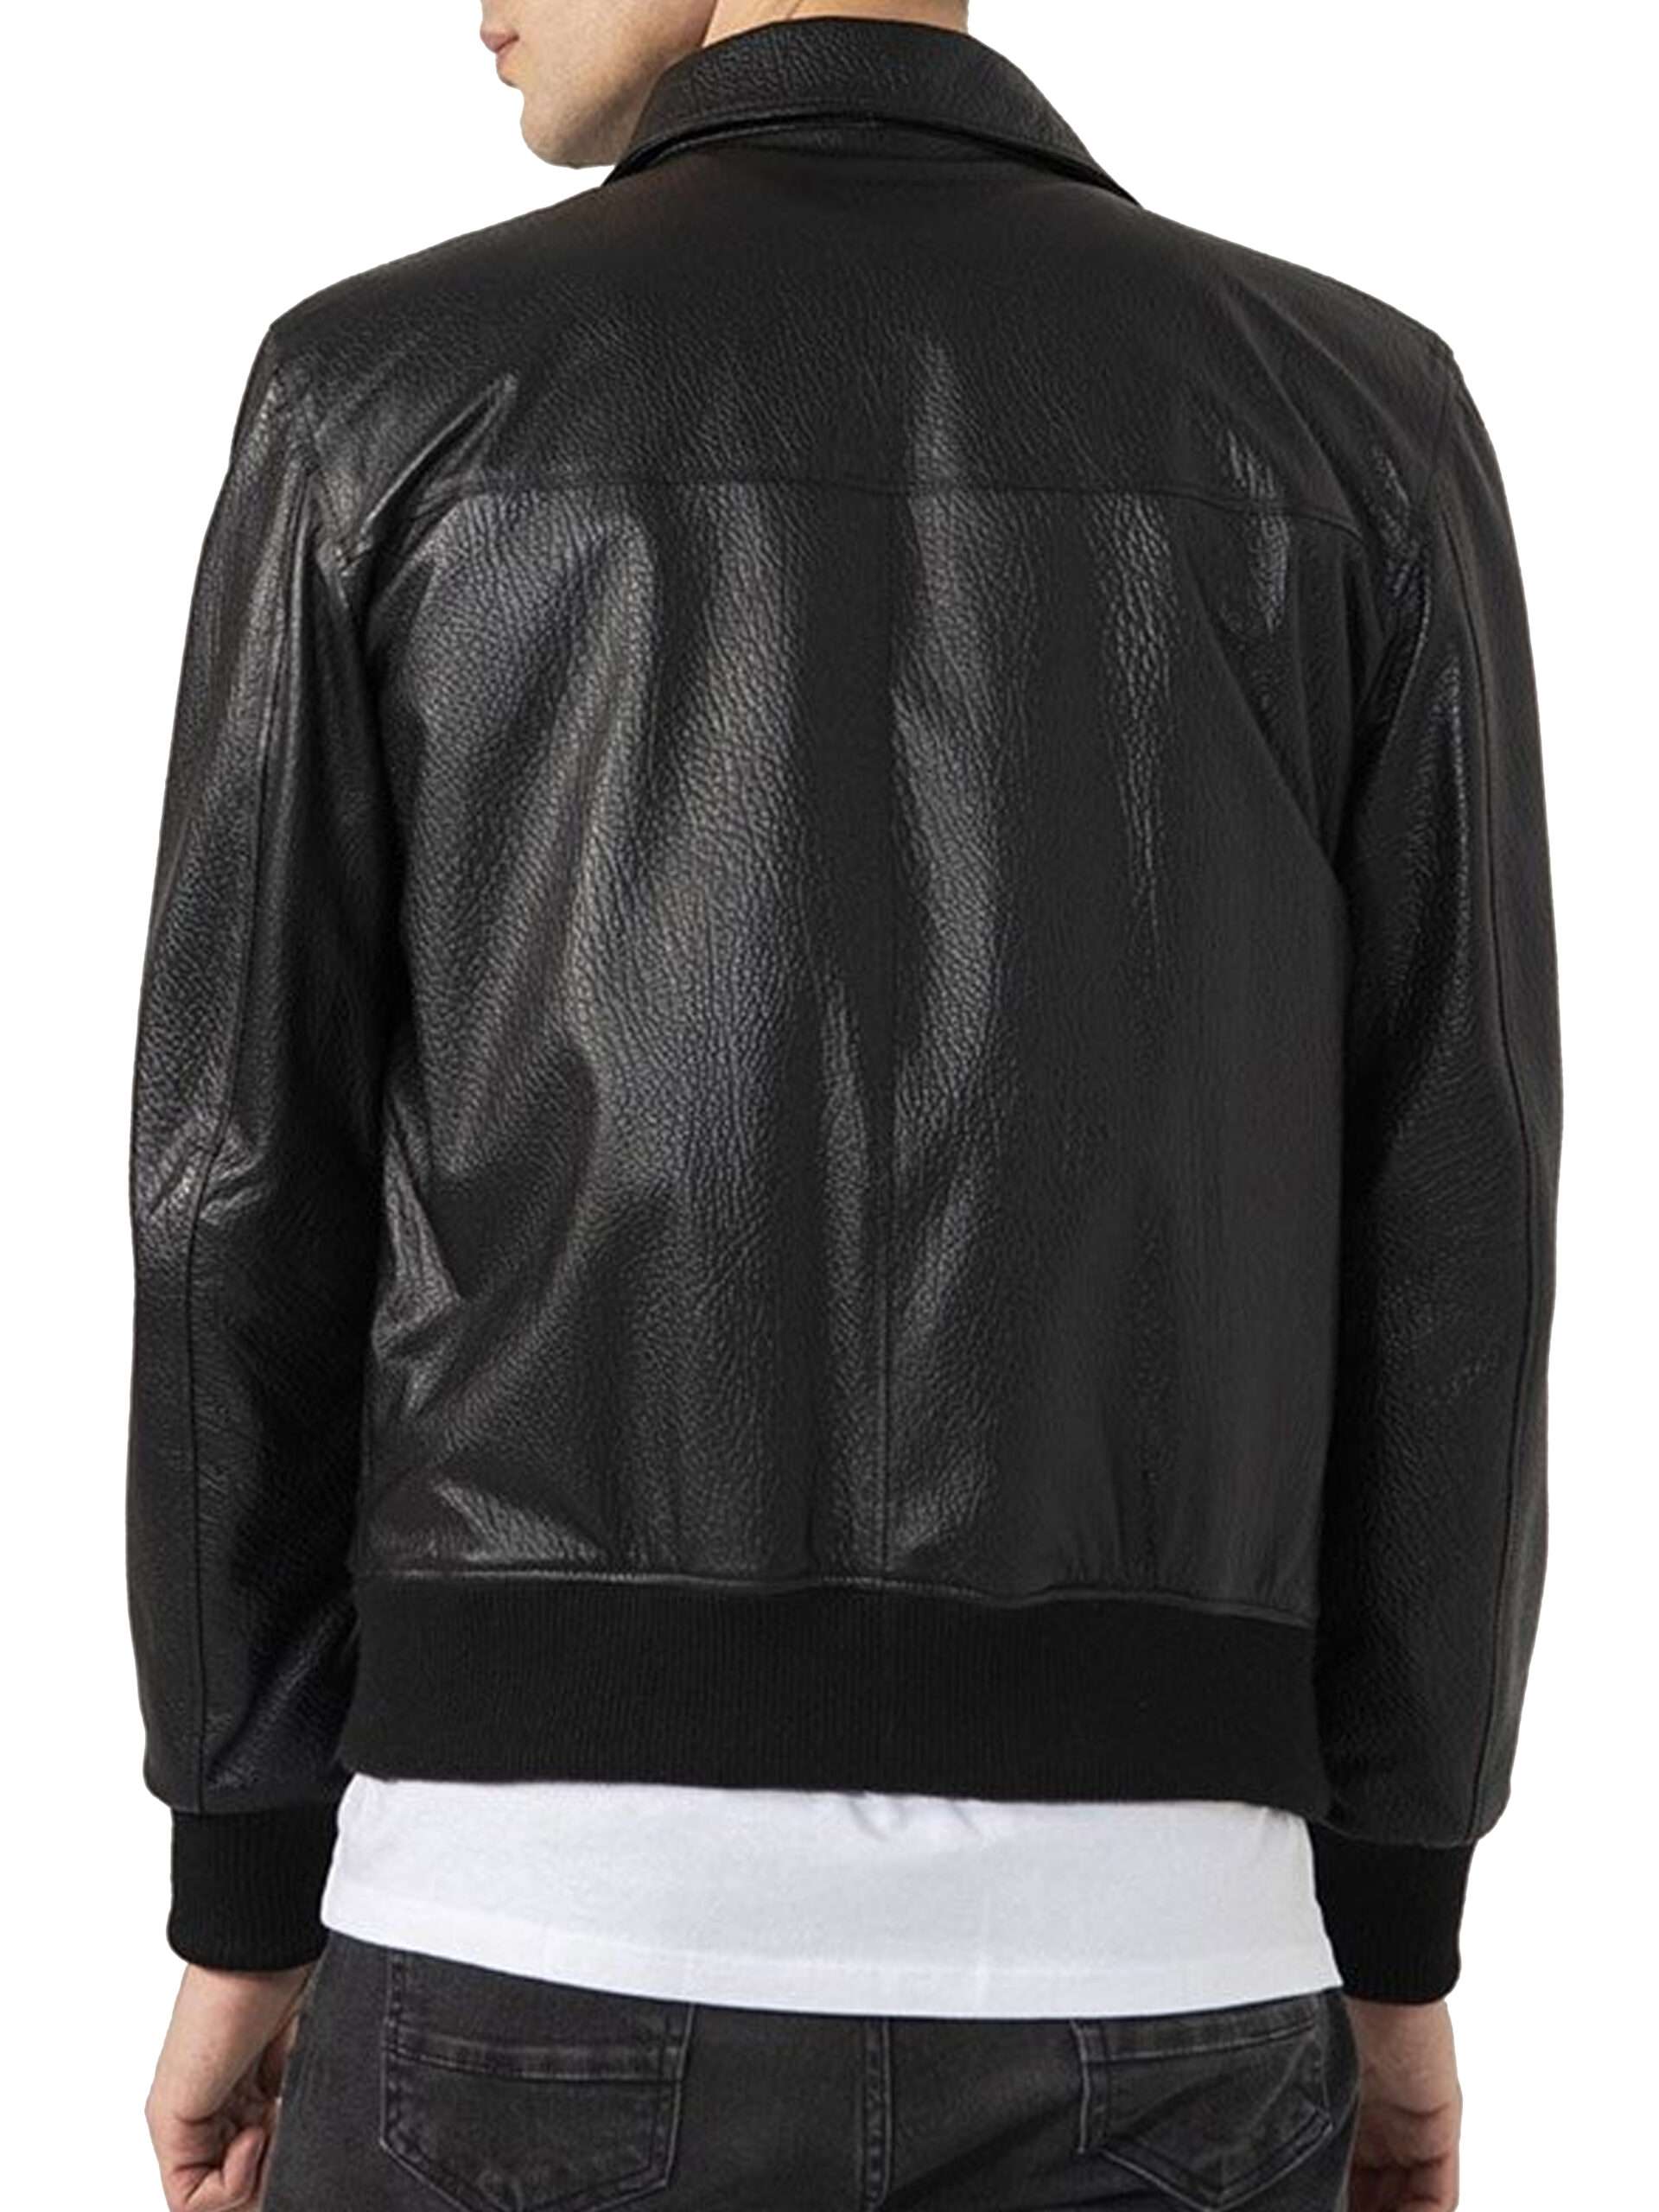 Black Bomber Leather Jacket